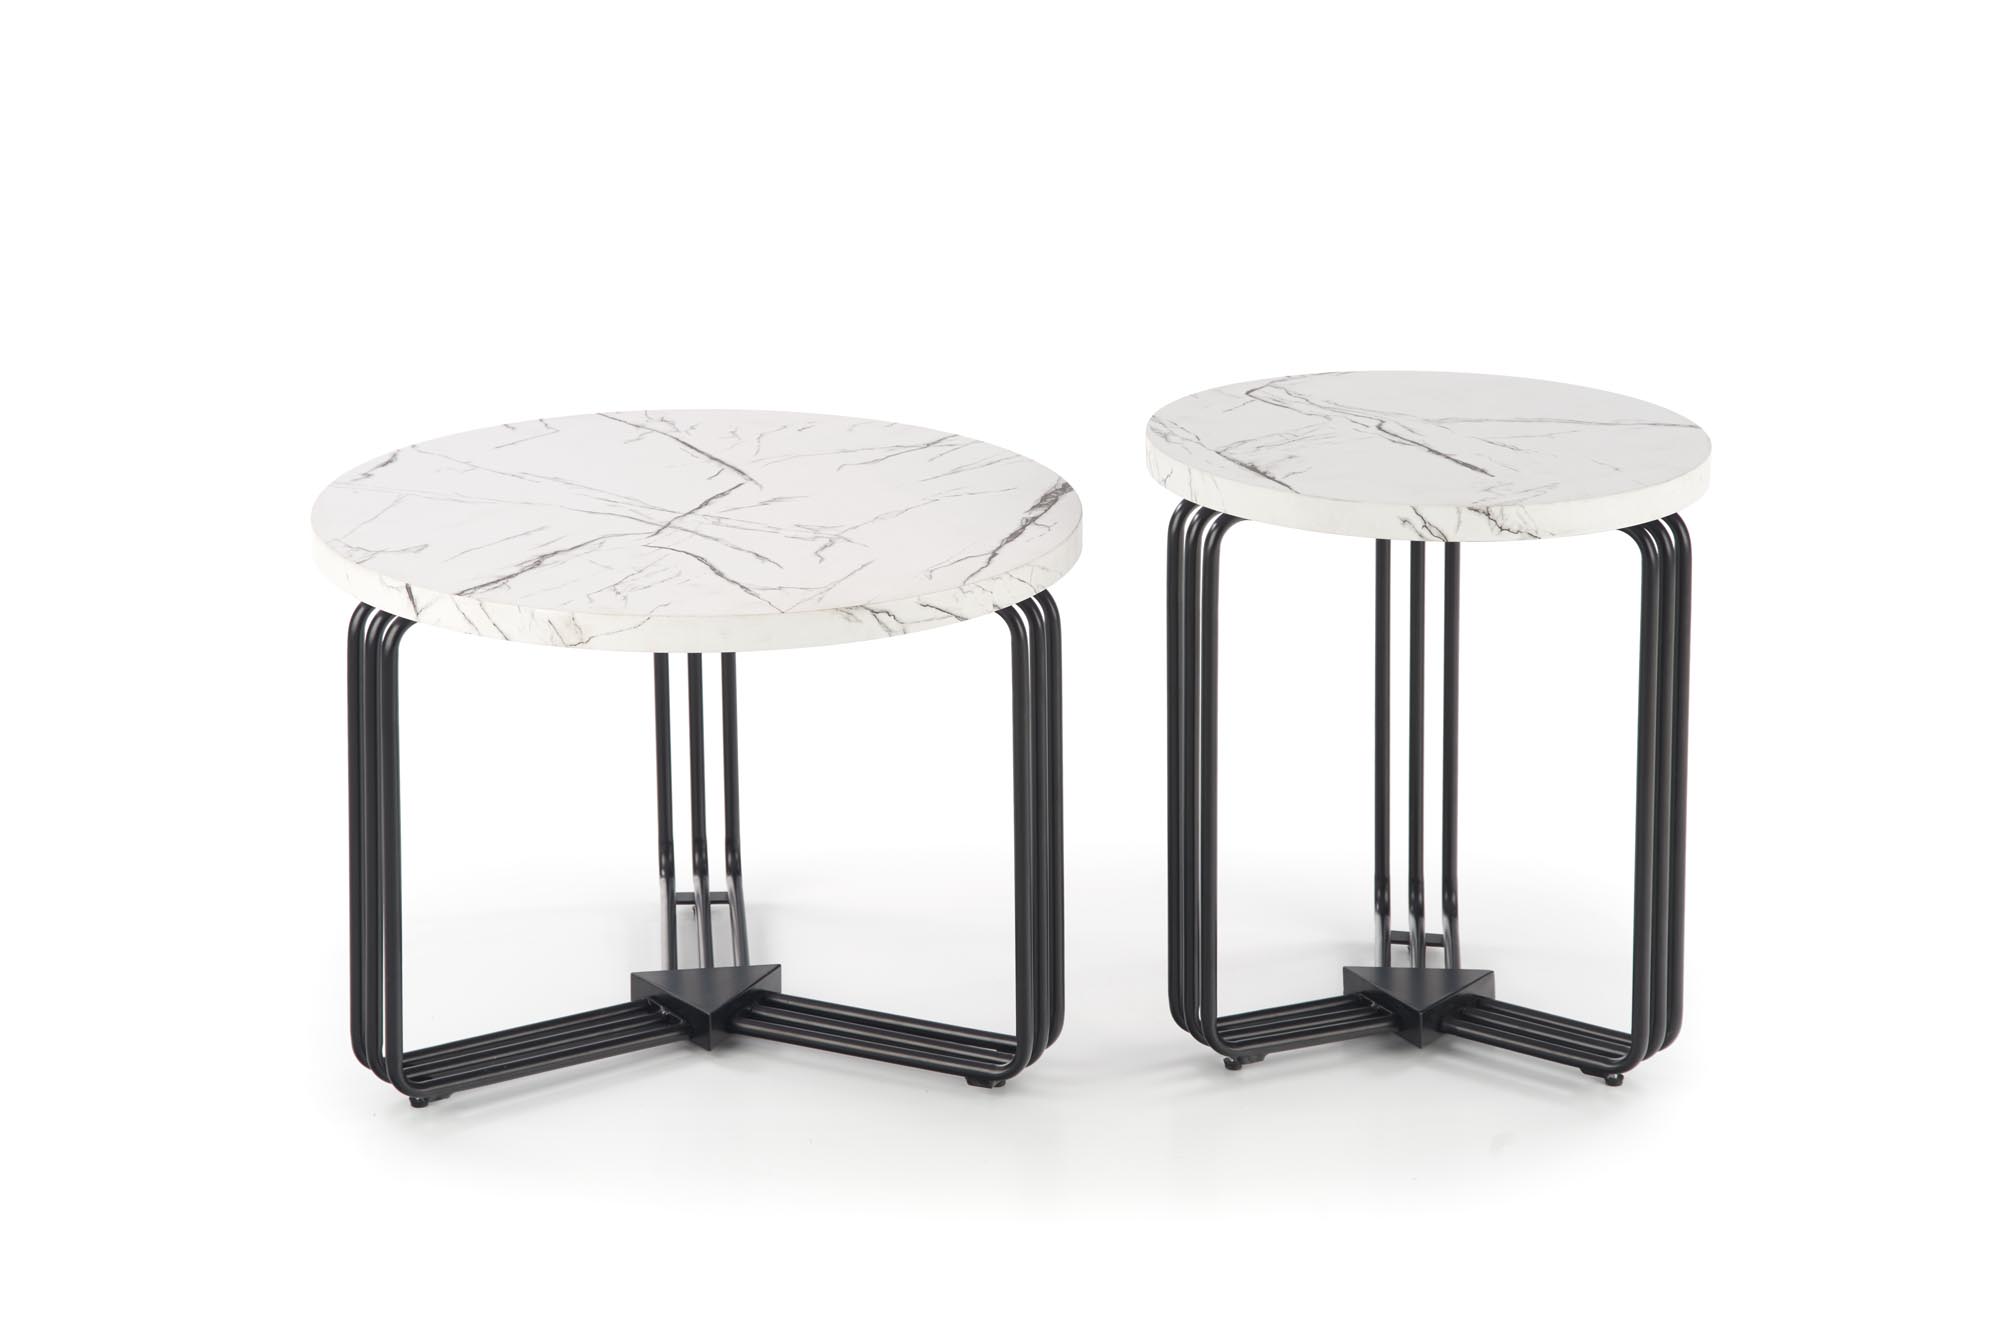 ANTICA M Konferenční stolek Deska - Bílý mramor, Podstavec - Černý antica m Konferenční stolek Deska - Bílý mramor, Rošt - Černý